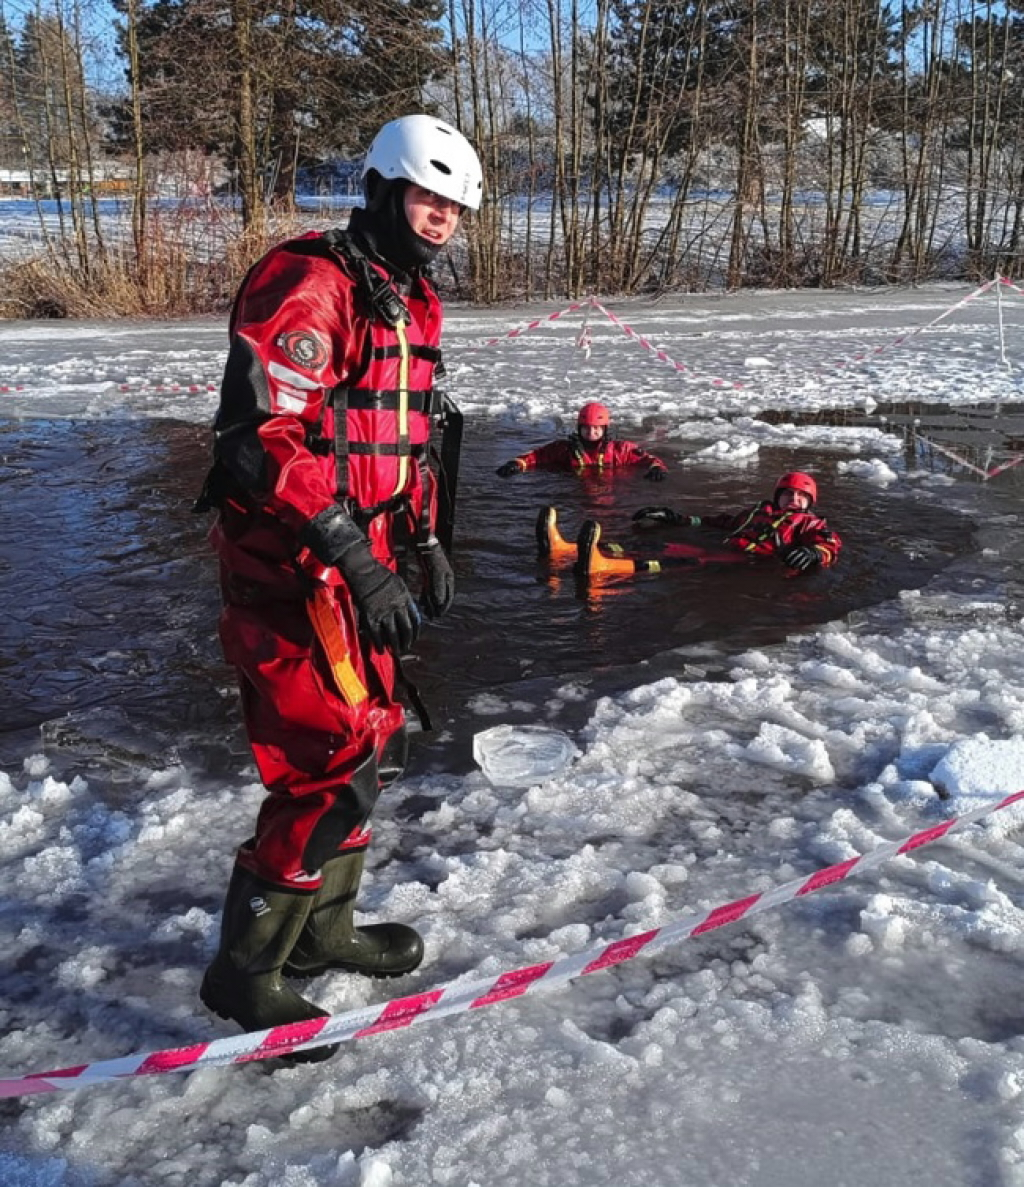 Mrazivé počasí pomohlo hasičům. Trénovali záchranu osob ze zamrzlé vodní hladiny